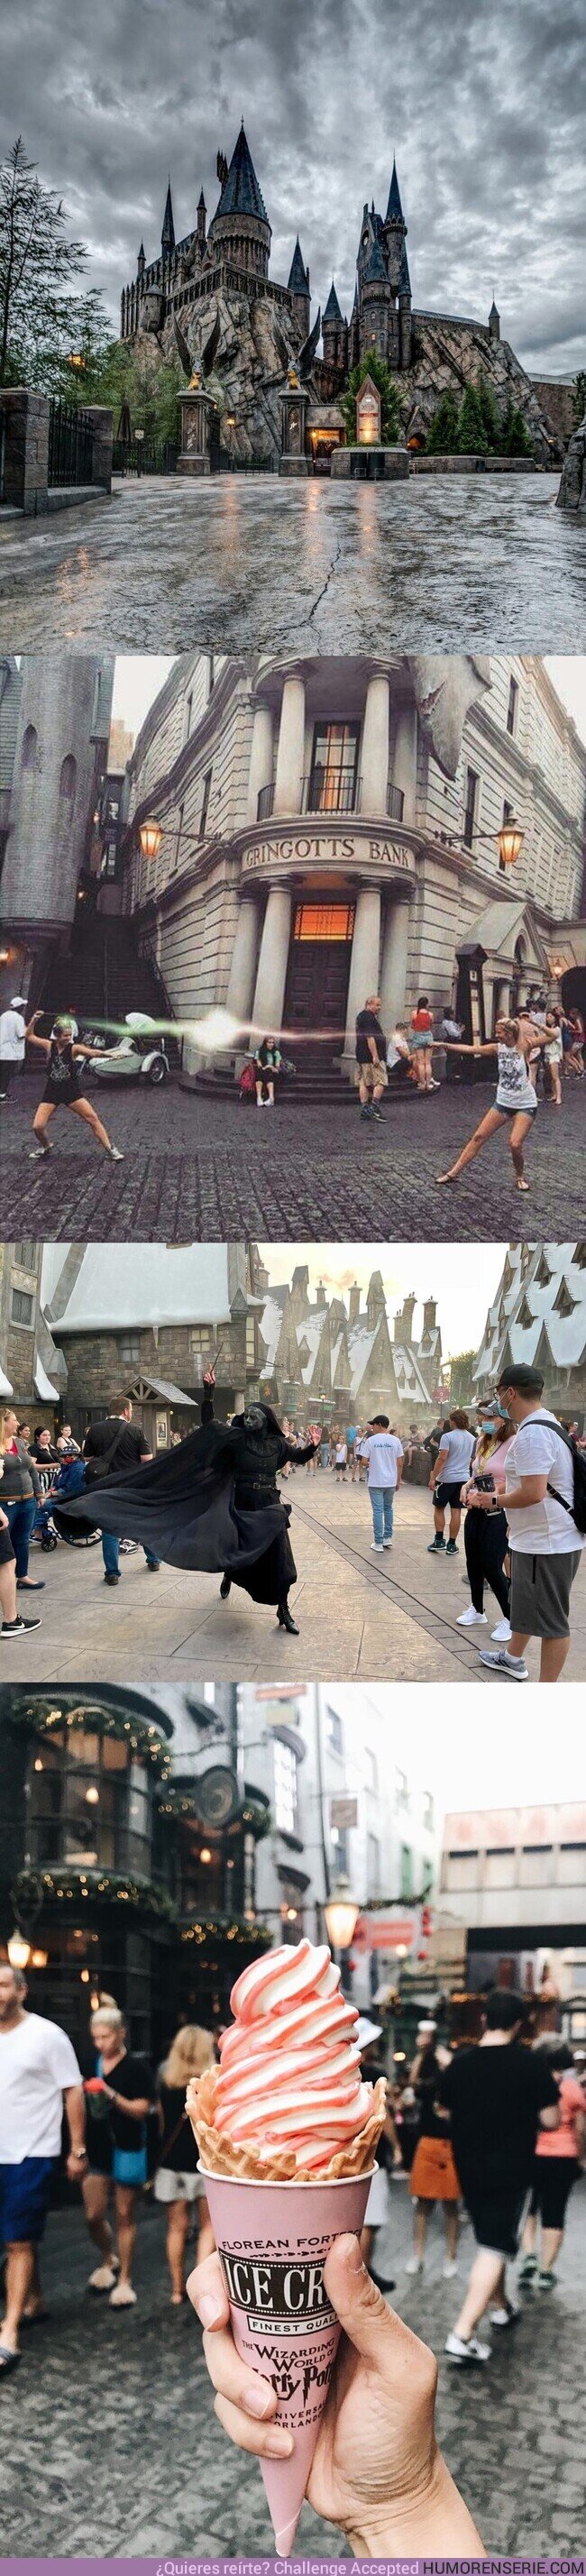 148362 - Ojalá algún día cumplir mi sueño de ir al parque temático de Harry Potter, por @Frikimaestro